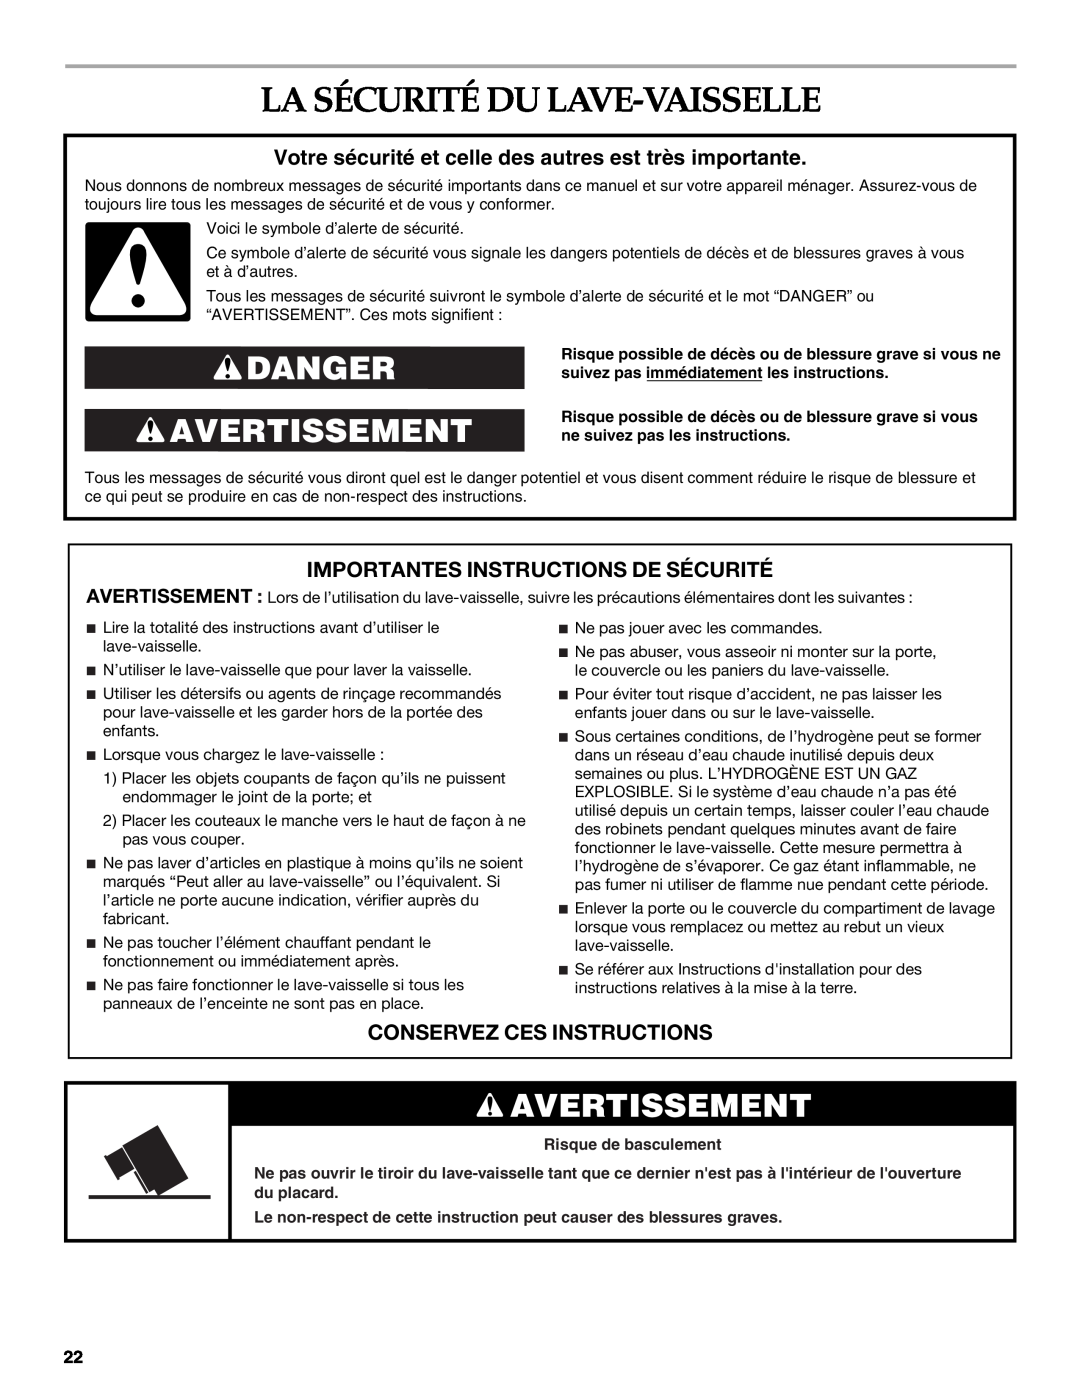 KitchenAid KUDD01DPPA, 8573754 La Sécurité Du Lave-Vaisselle, Danger Avertissement, Importantes Instructions De Sécurité 